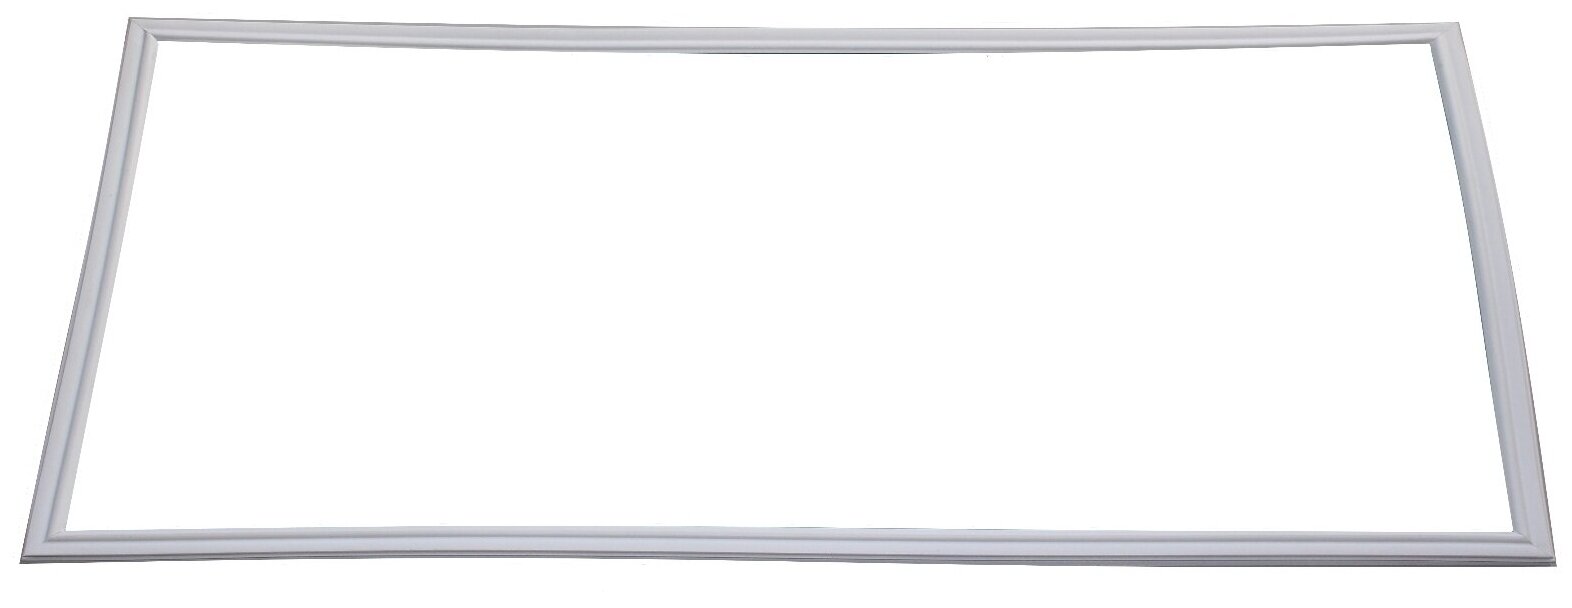 Уплотнитель для двери морозильной камеры холодильника Днепр ДХ-243 (41 x 55 см)